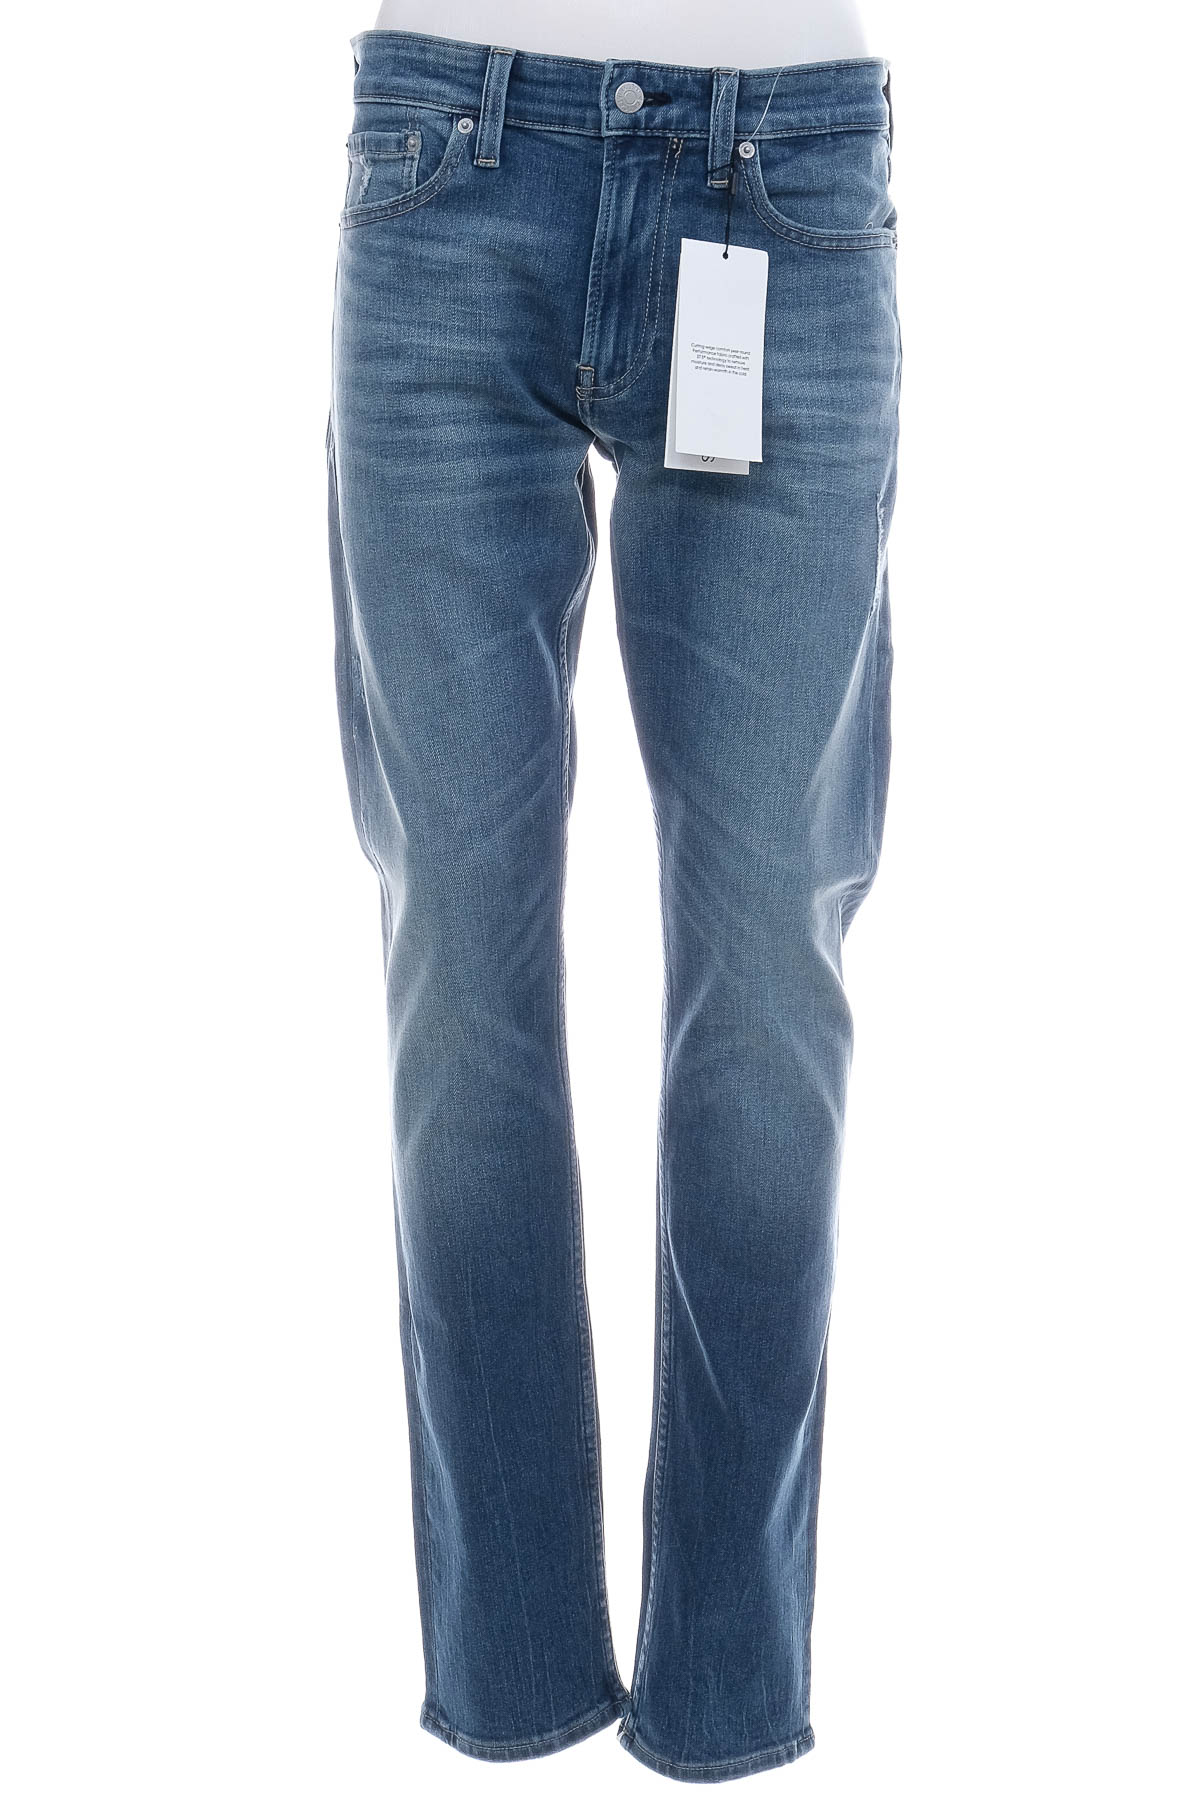 Jeans pentru bărbăți - Calvin Klein Jeans - 0